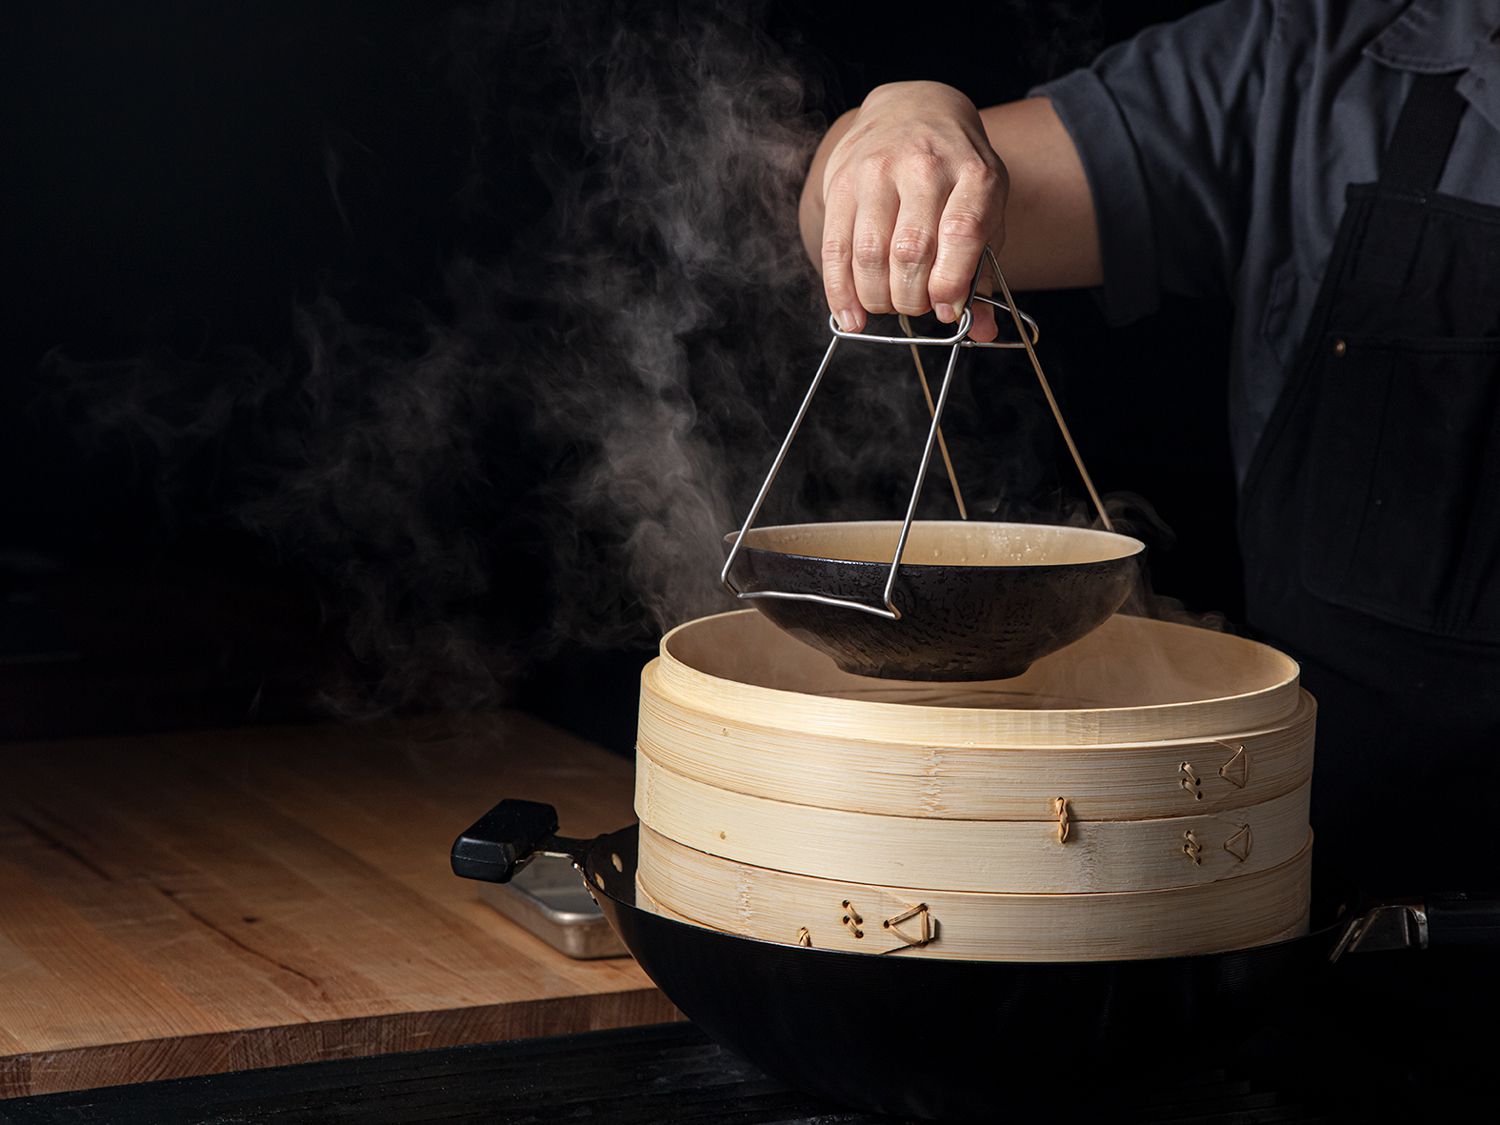 热菜蒸锅是把碗从放在锅里的竹蒸锅里提出来。